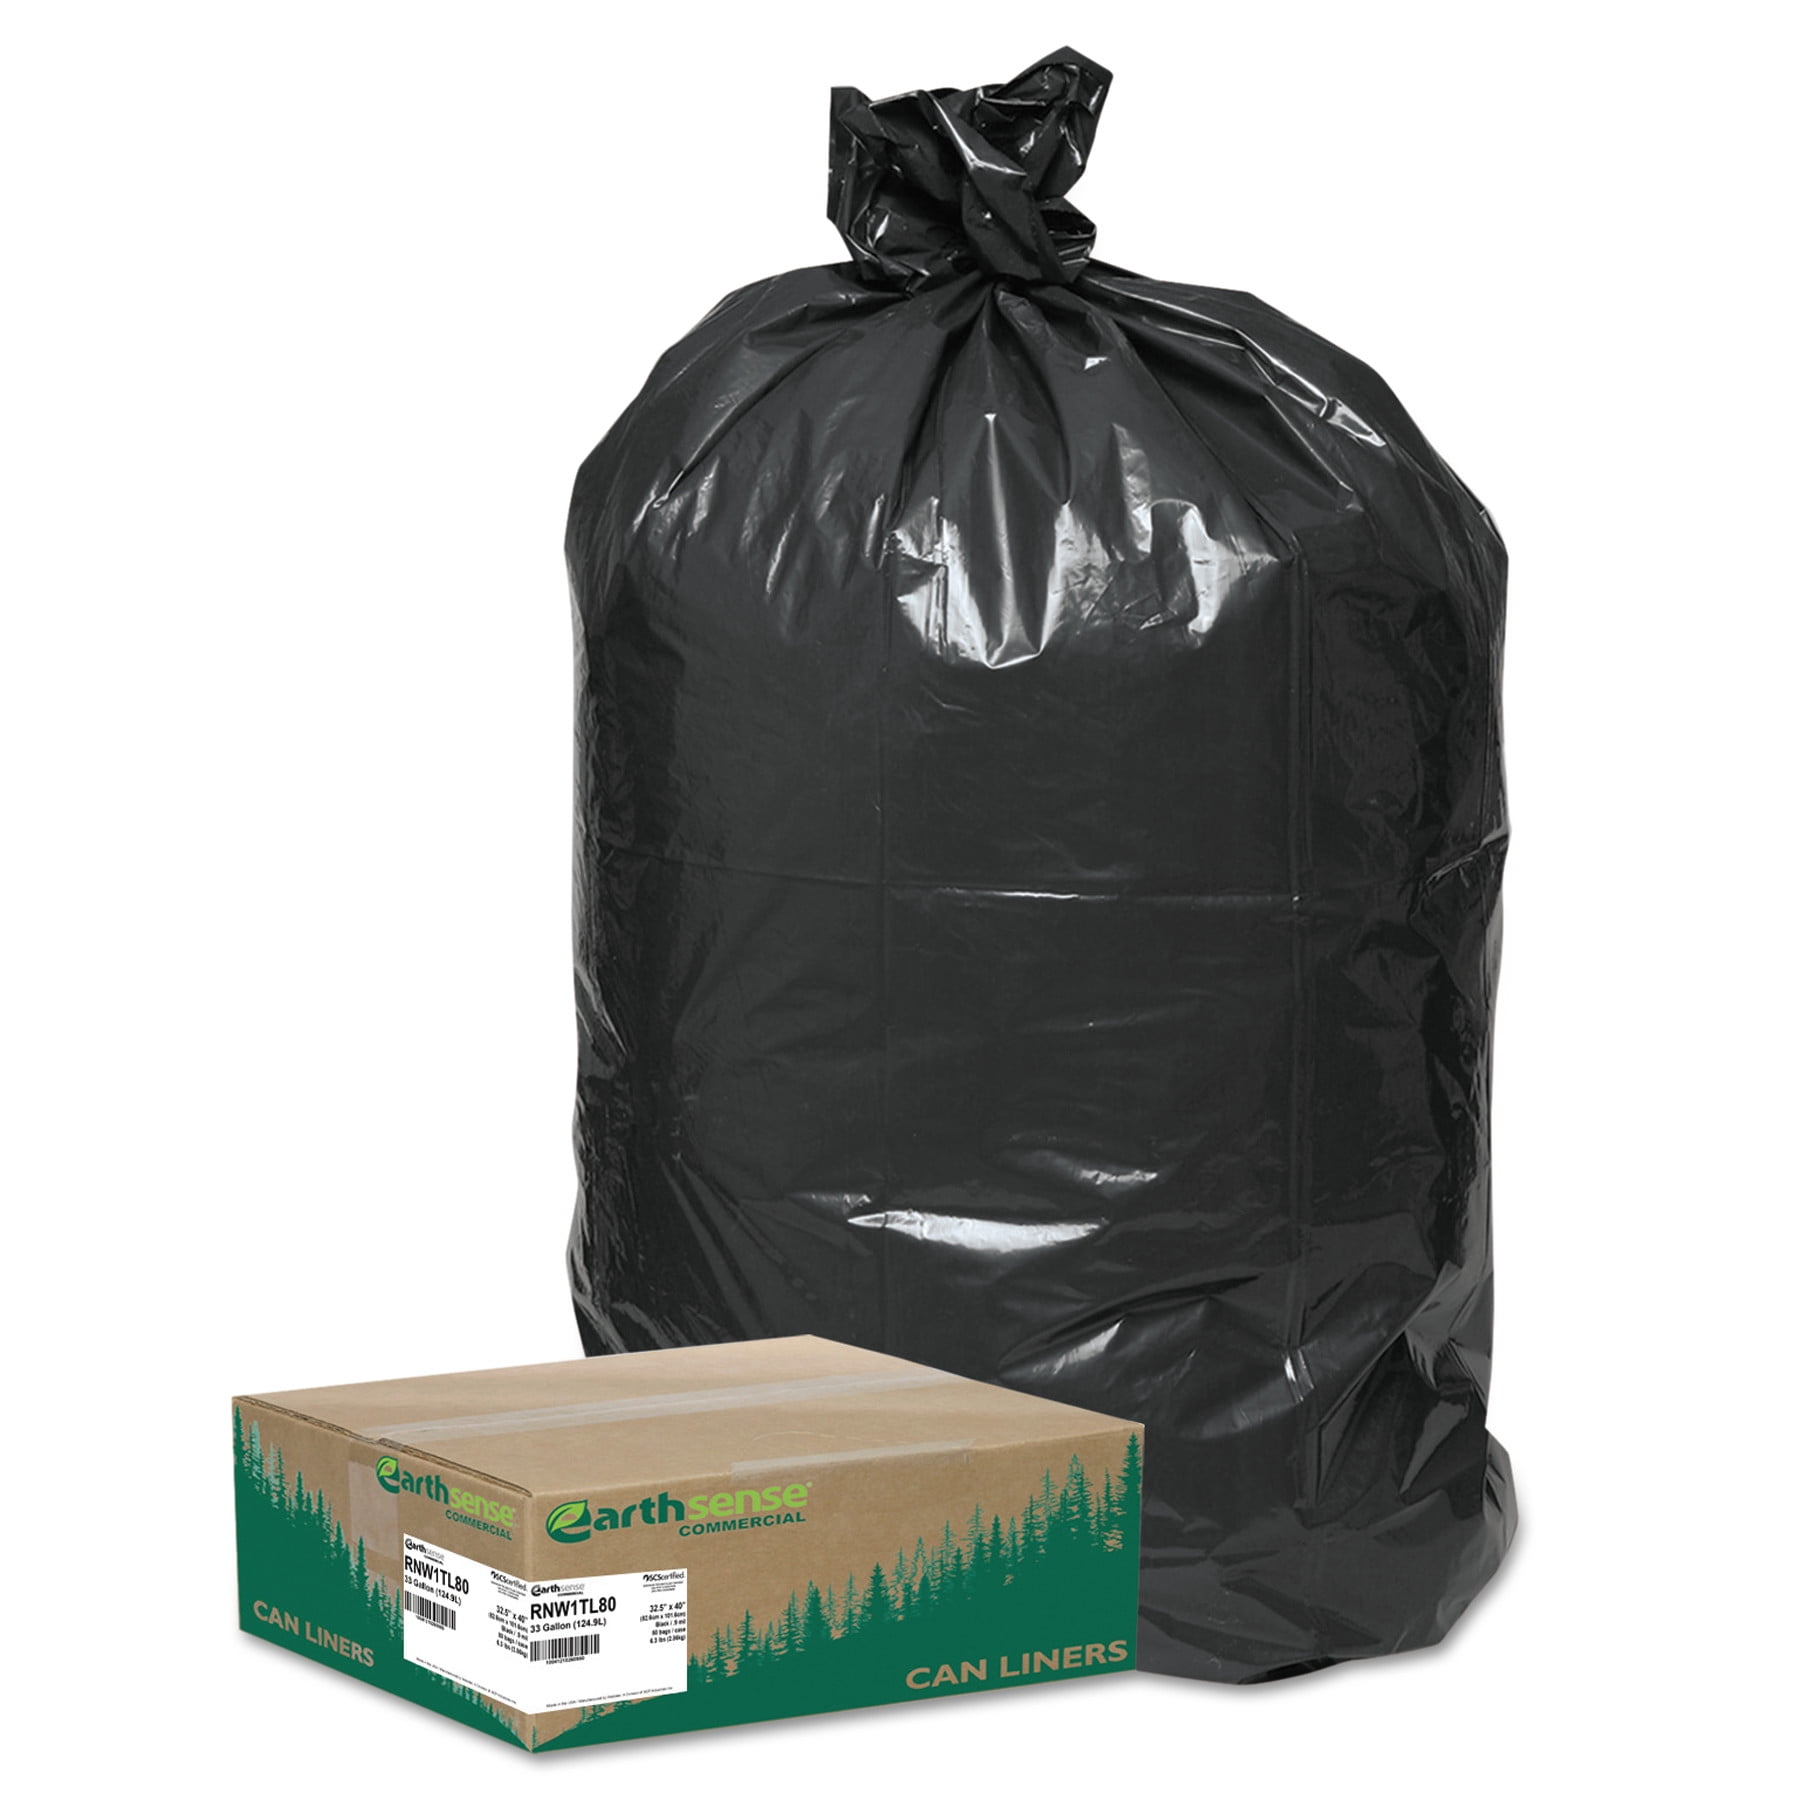 Heavy Duty Waste Bin Liners Refuse Recyclable Black Bin Bags for All Purpose 